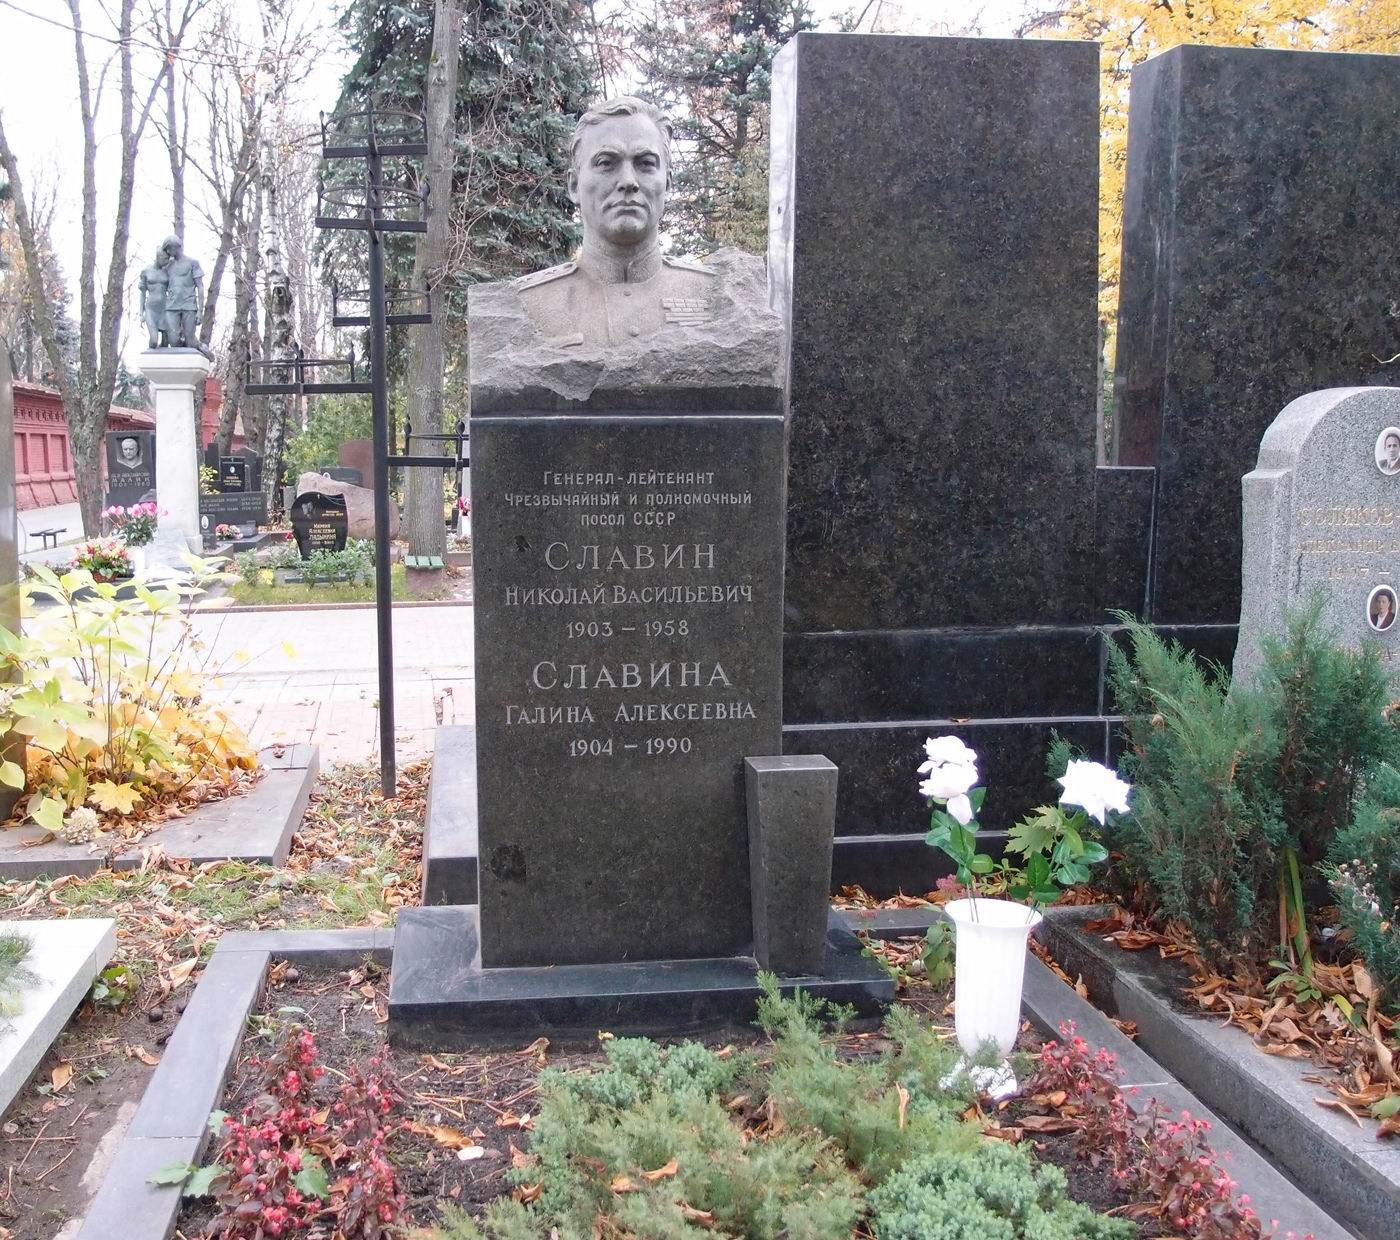 Памятник на могиле Славина Н.В. (1903—1958), ск. А.Томский, на Новодевичьем кладбище (5-25-3).